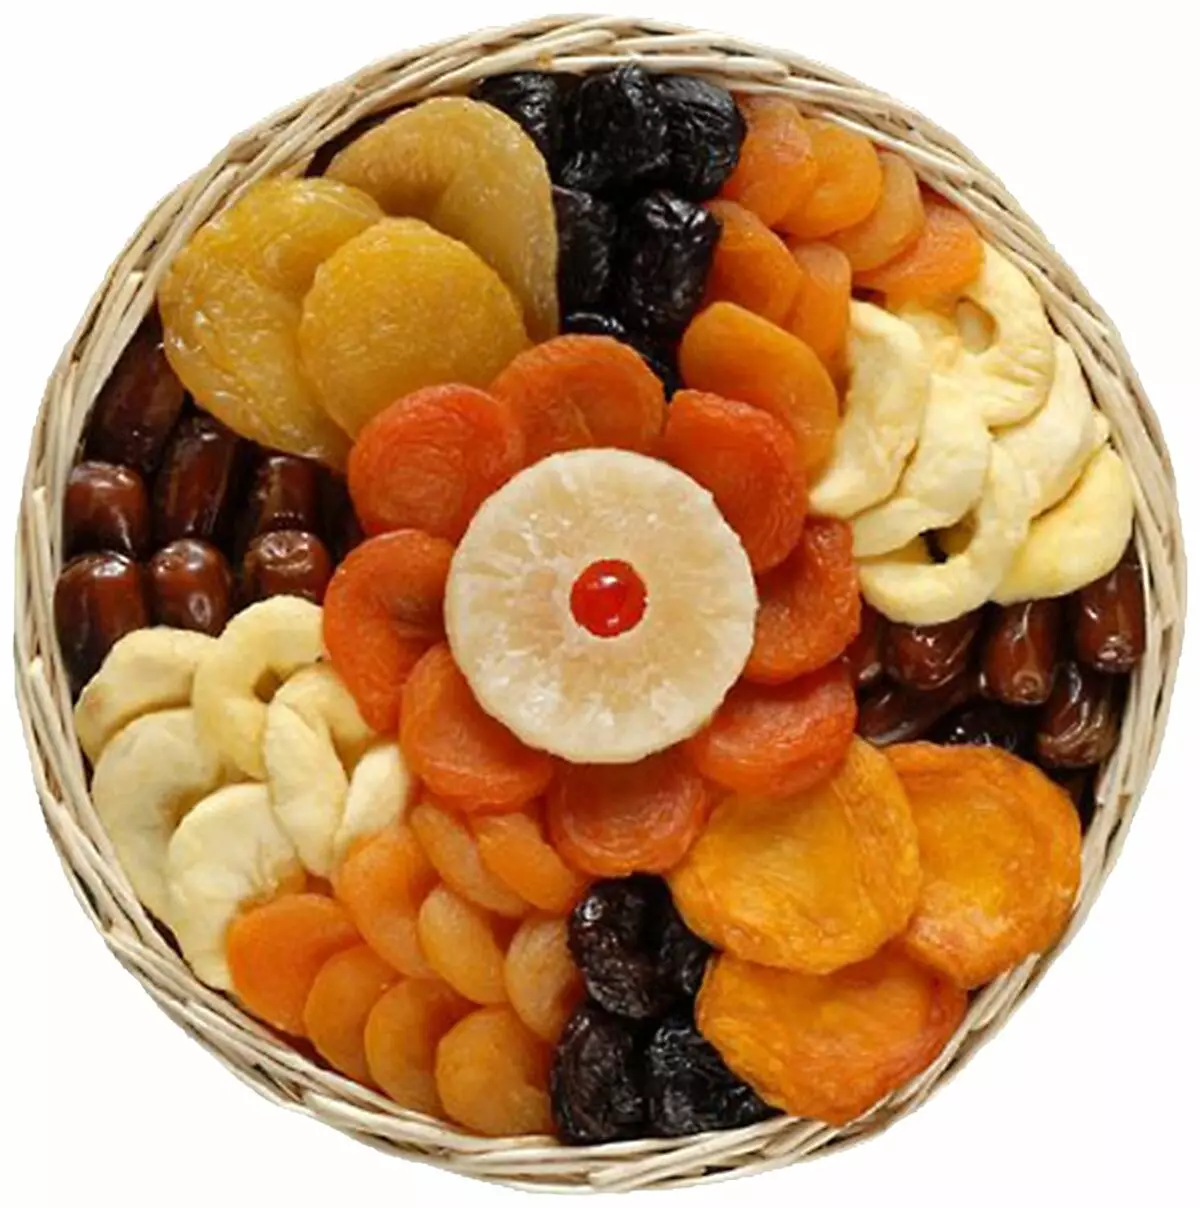 Regali da frutta secca e noci: come magnificamente imballare un set di frutta secca e noci? Come metterli magnificamente su un piatto? 7682_27